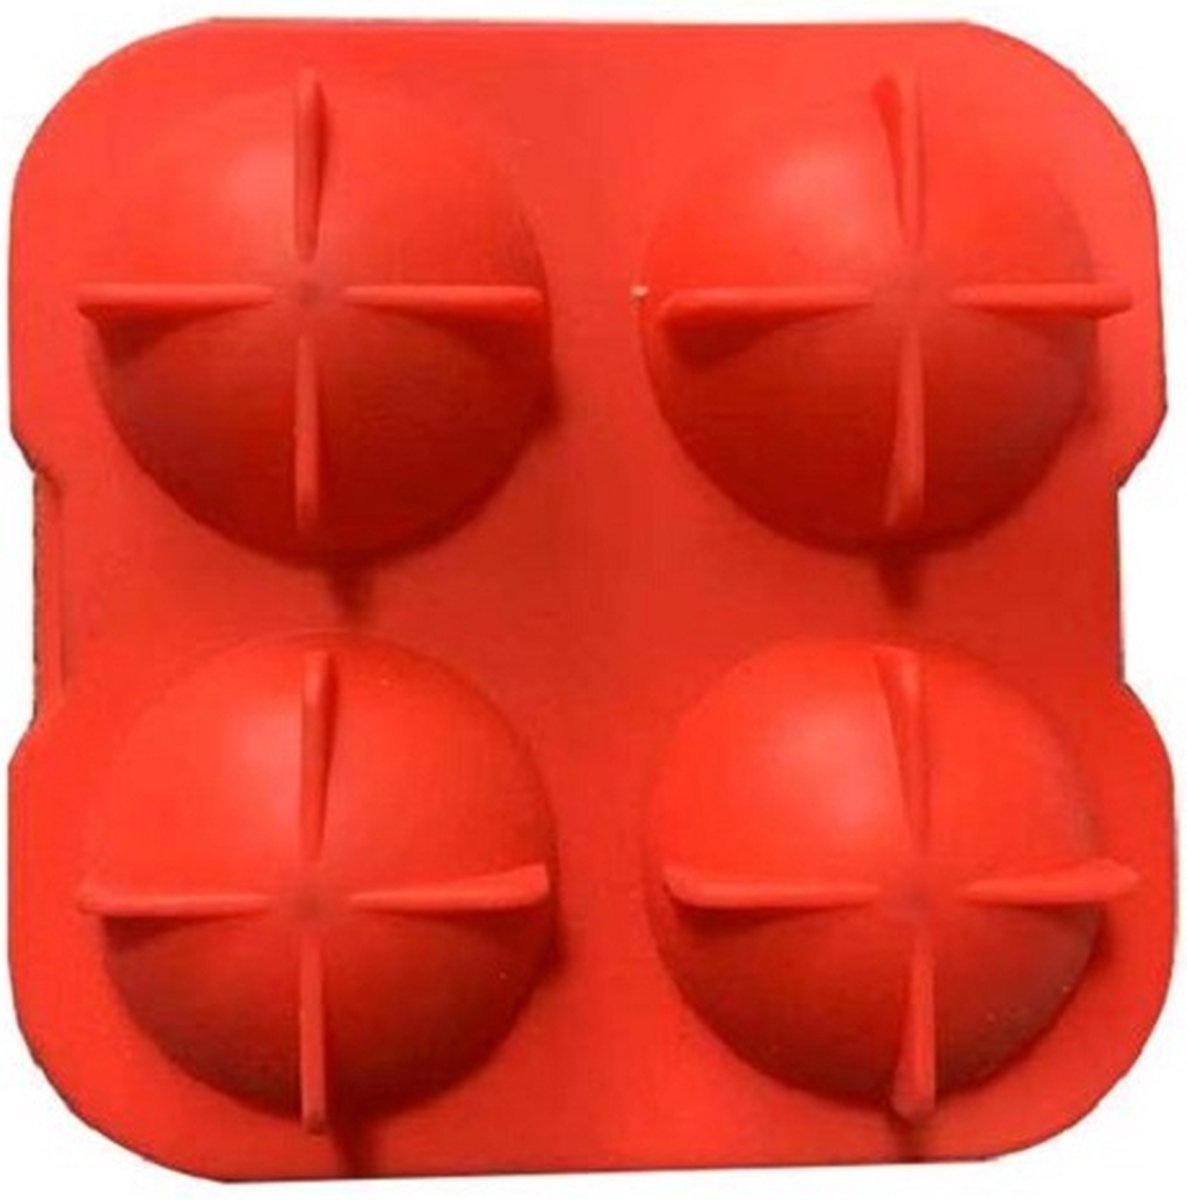 Siliconen IJsballenvorm - 4 ijsballen Ø 4,5cm - Whiskey ijsballen - Rood - stuks |